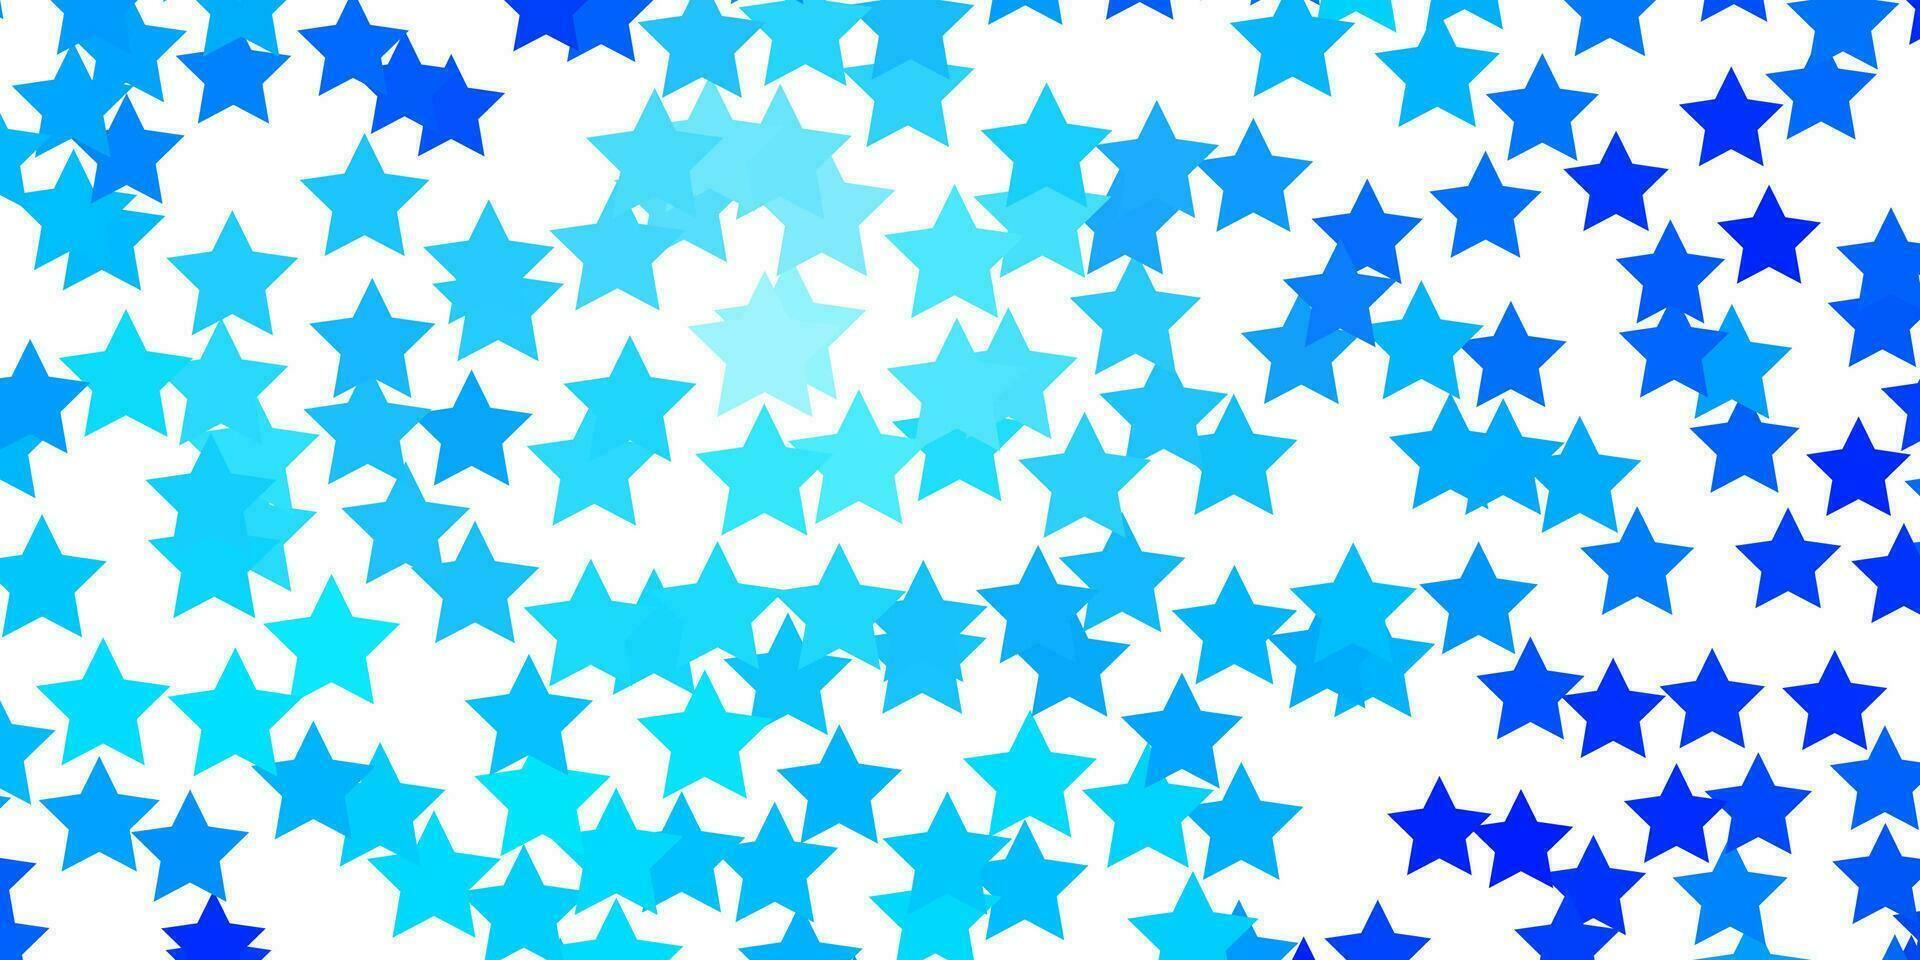 disposition de vecteur bleu clair avec des étoiles brillantes.